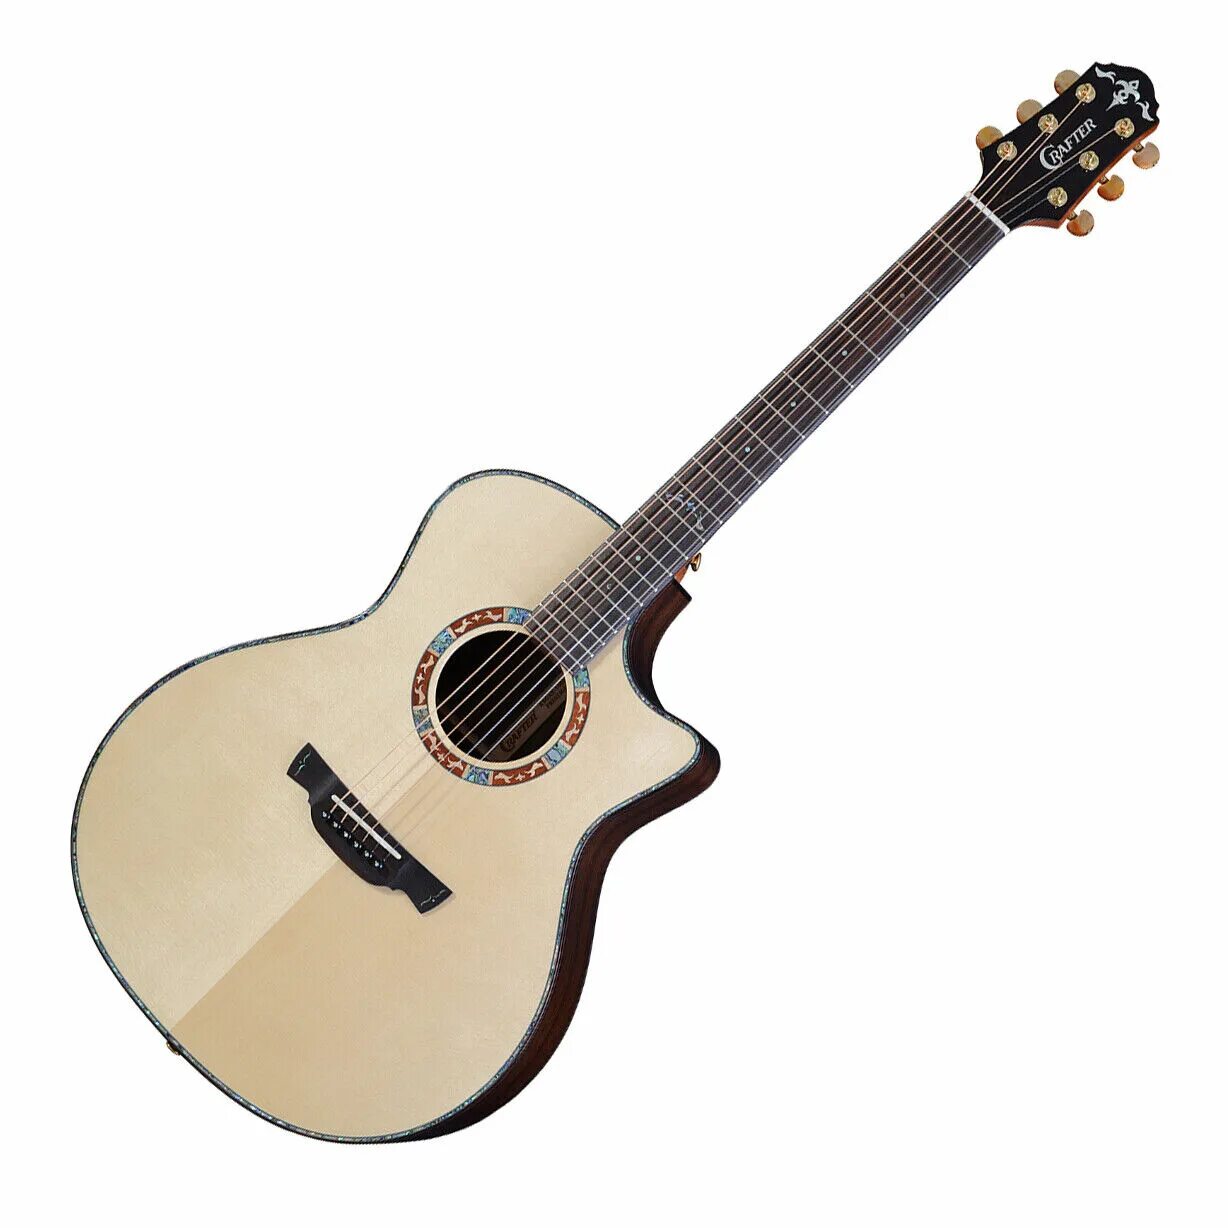 Гитара крафтер купить. Электроакустическая гитара Crafter HD-250ce. Электроакустическая гитара Crafter ml g-1000ce. Rockdale Aurora d1 c n. Акустическая гитара lag Tramontane t318a.